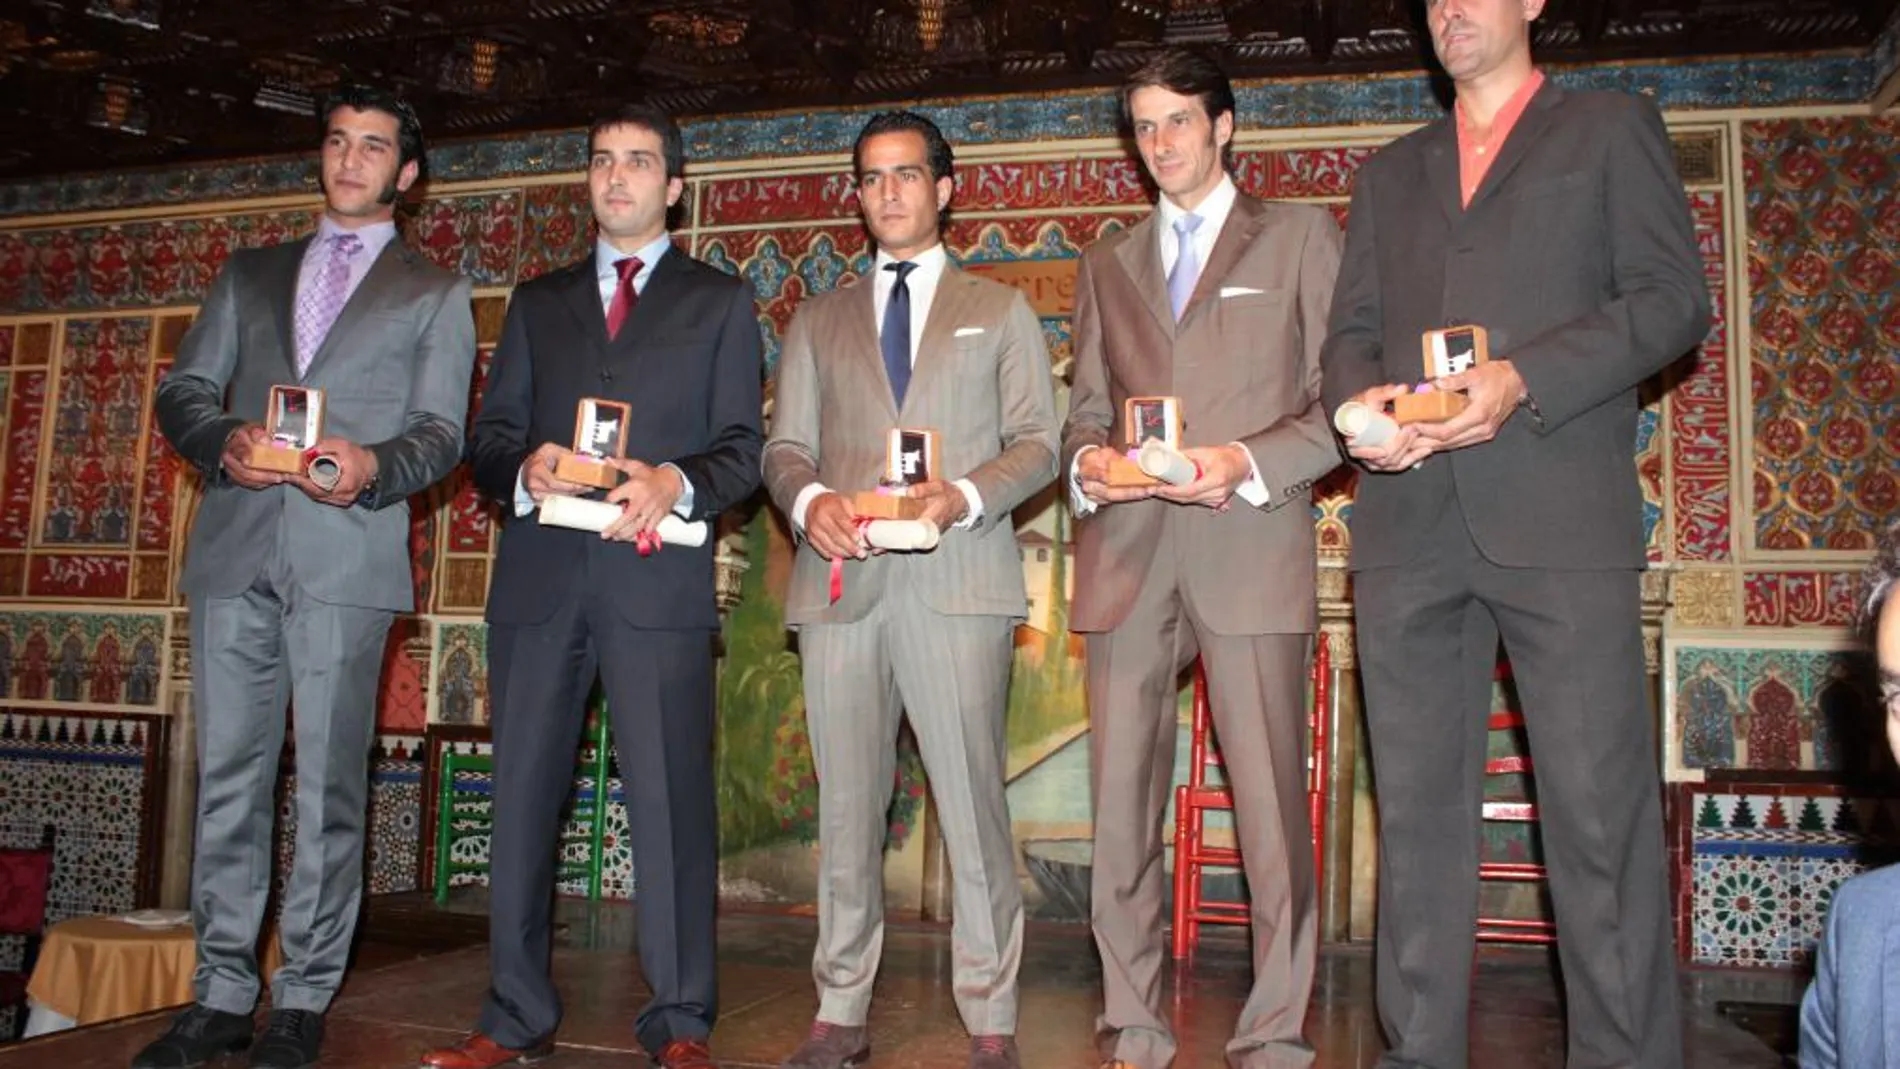 Fernando Sánchez, Javier Castaño, Iván Fandiño, David Adalid y Marco Galán, premiados en el tablao Torres Bermejas